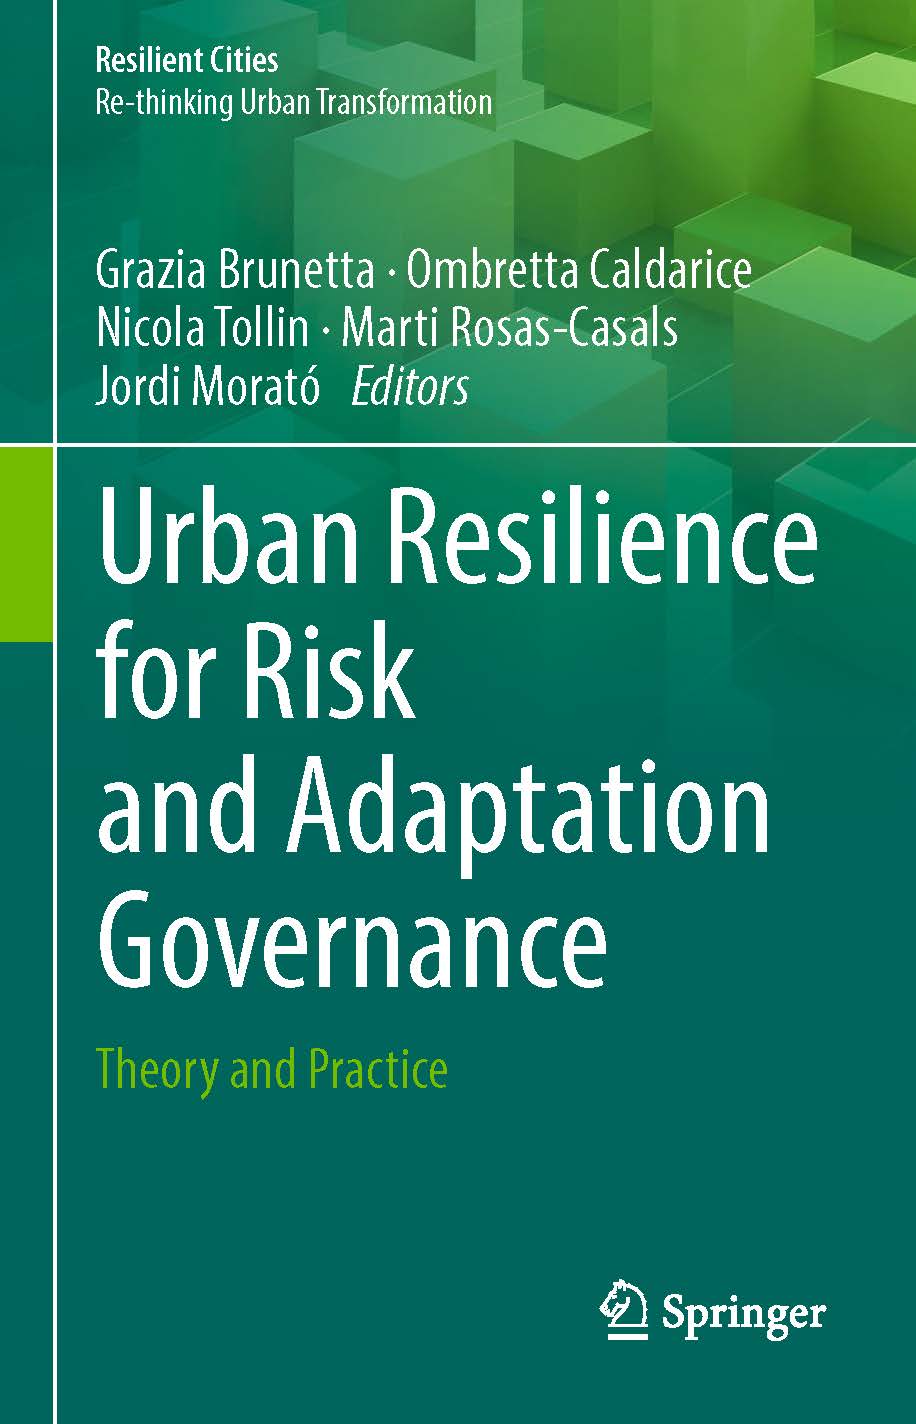 页面提取自－2019_Book_Urban Resilience for Risk and Adaptation Governance.jpg